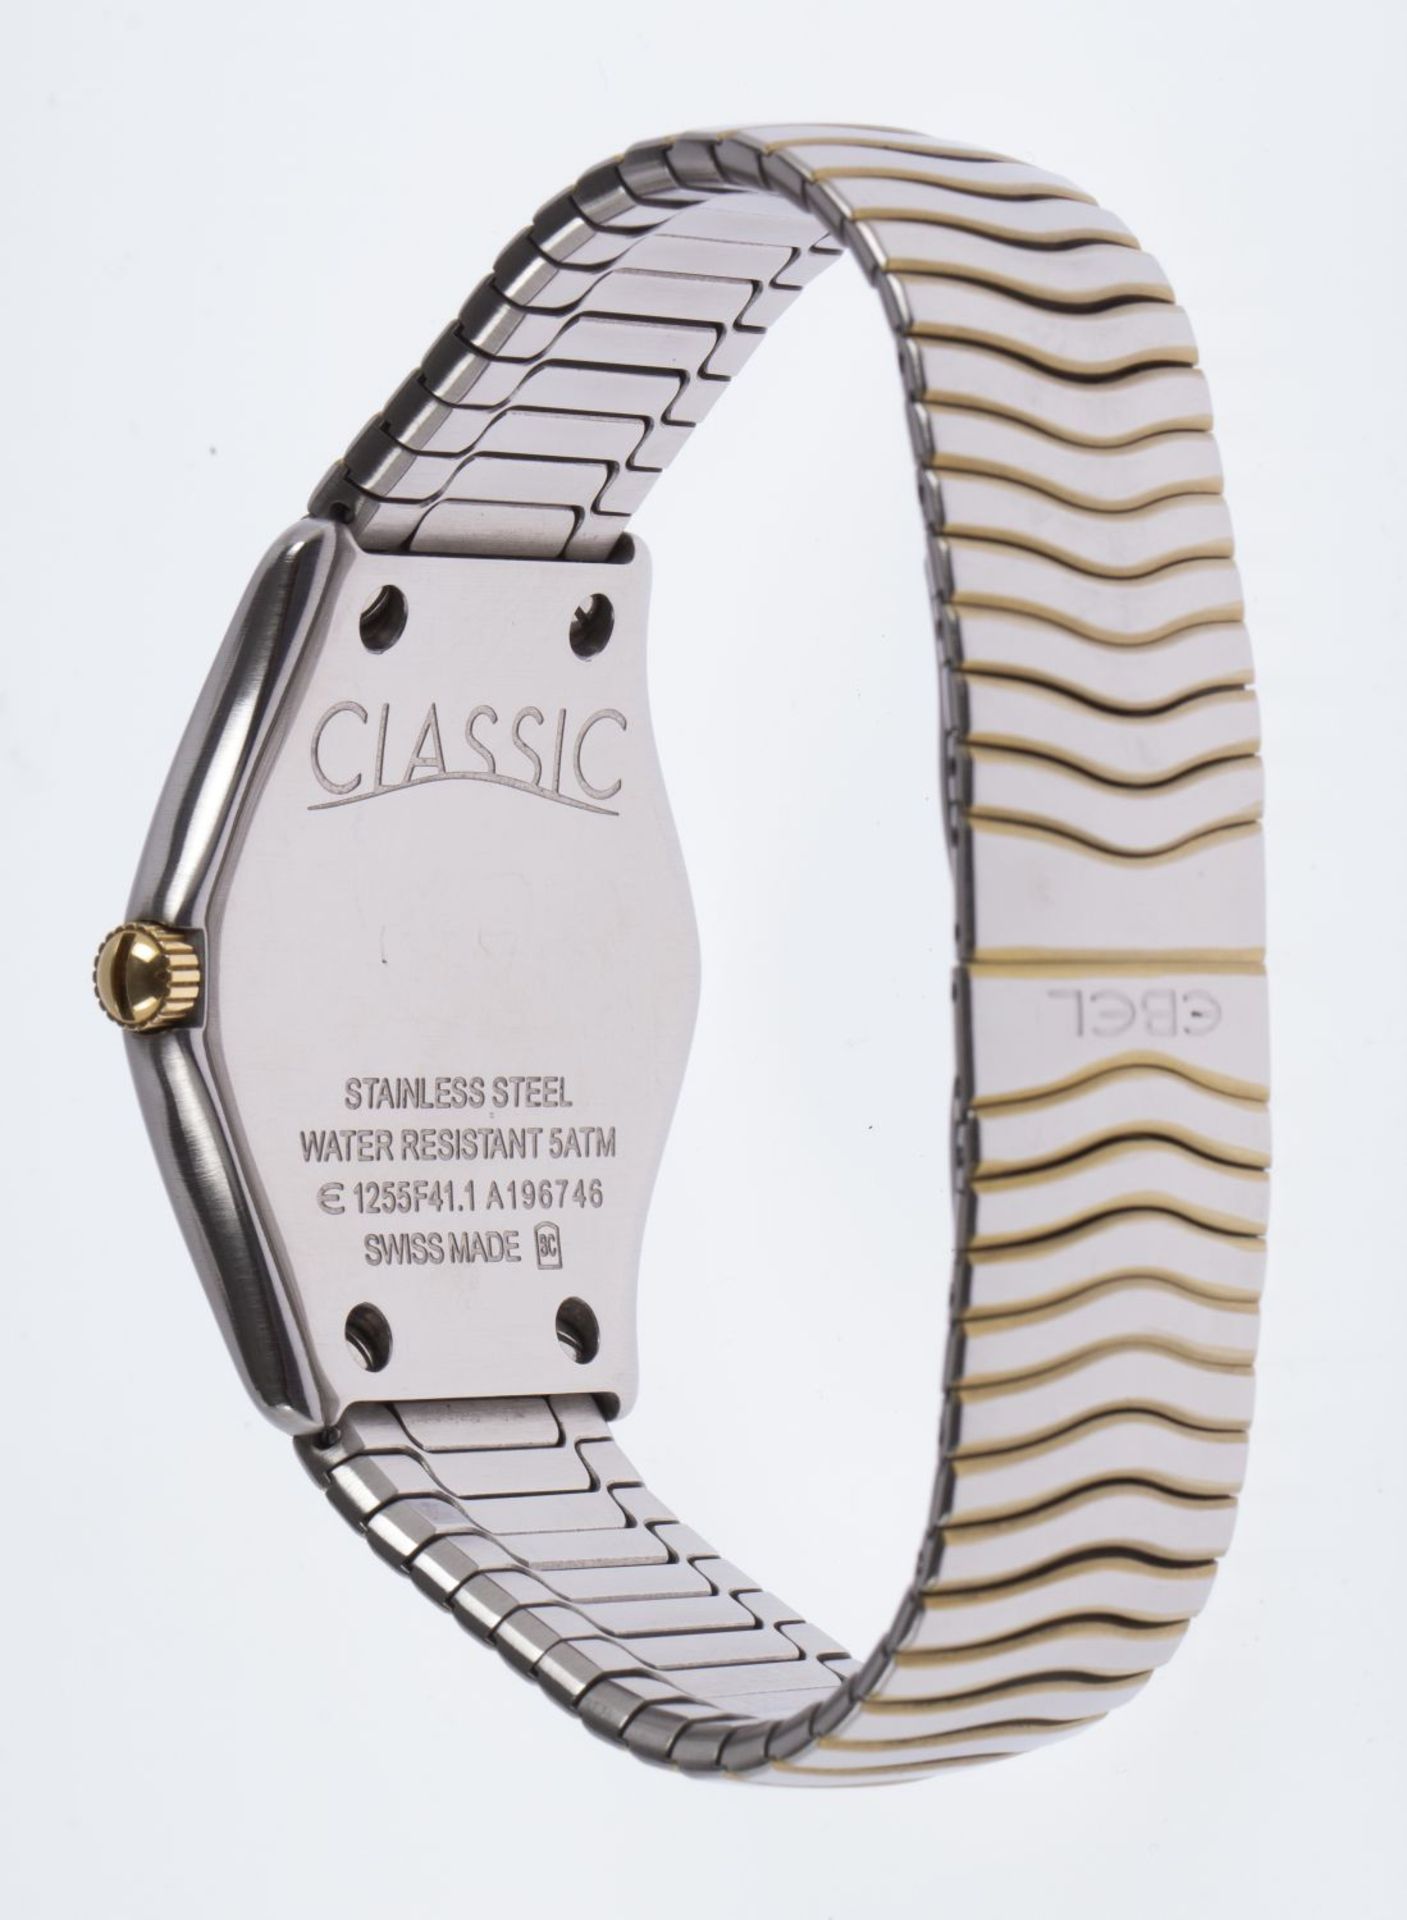 Armbanduhr "Classic" von Ebel Gehäuse - Bild 3 aus 4